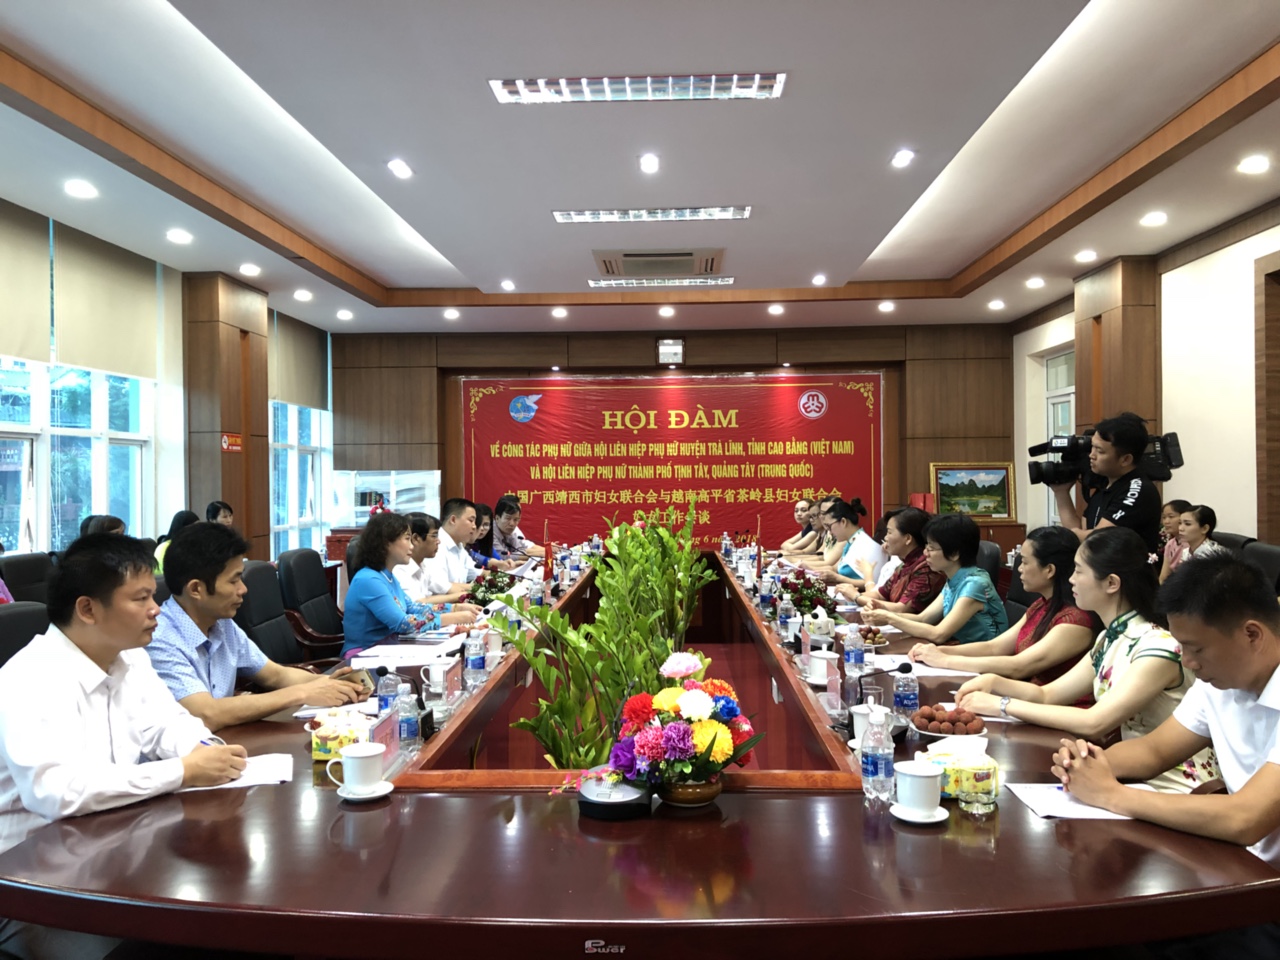 Phụ nữ hai nước Việt Nam -  Trung Quốc phối hợp   “Chung tay không để ma túy vào nhà mình”